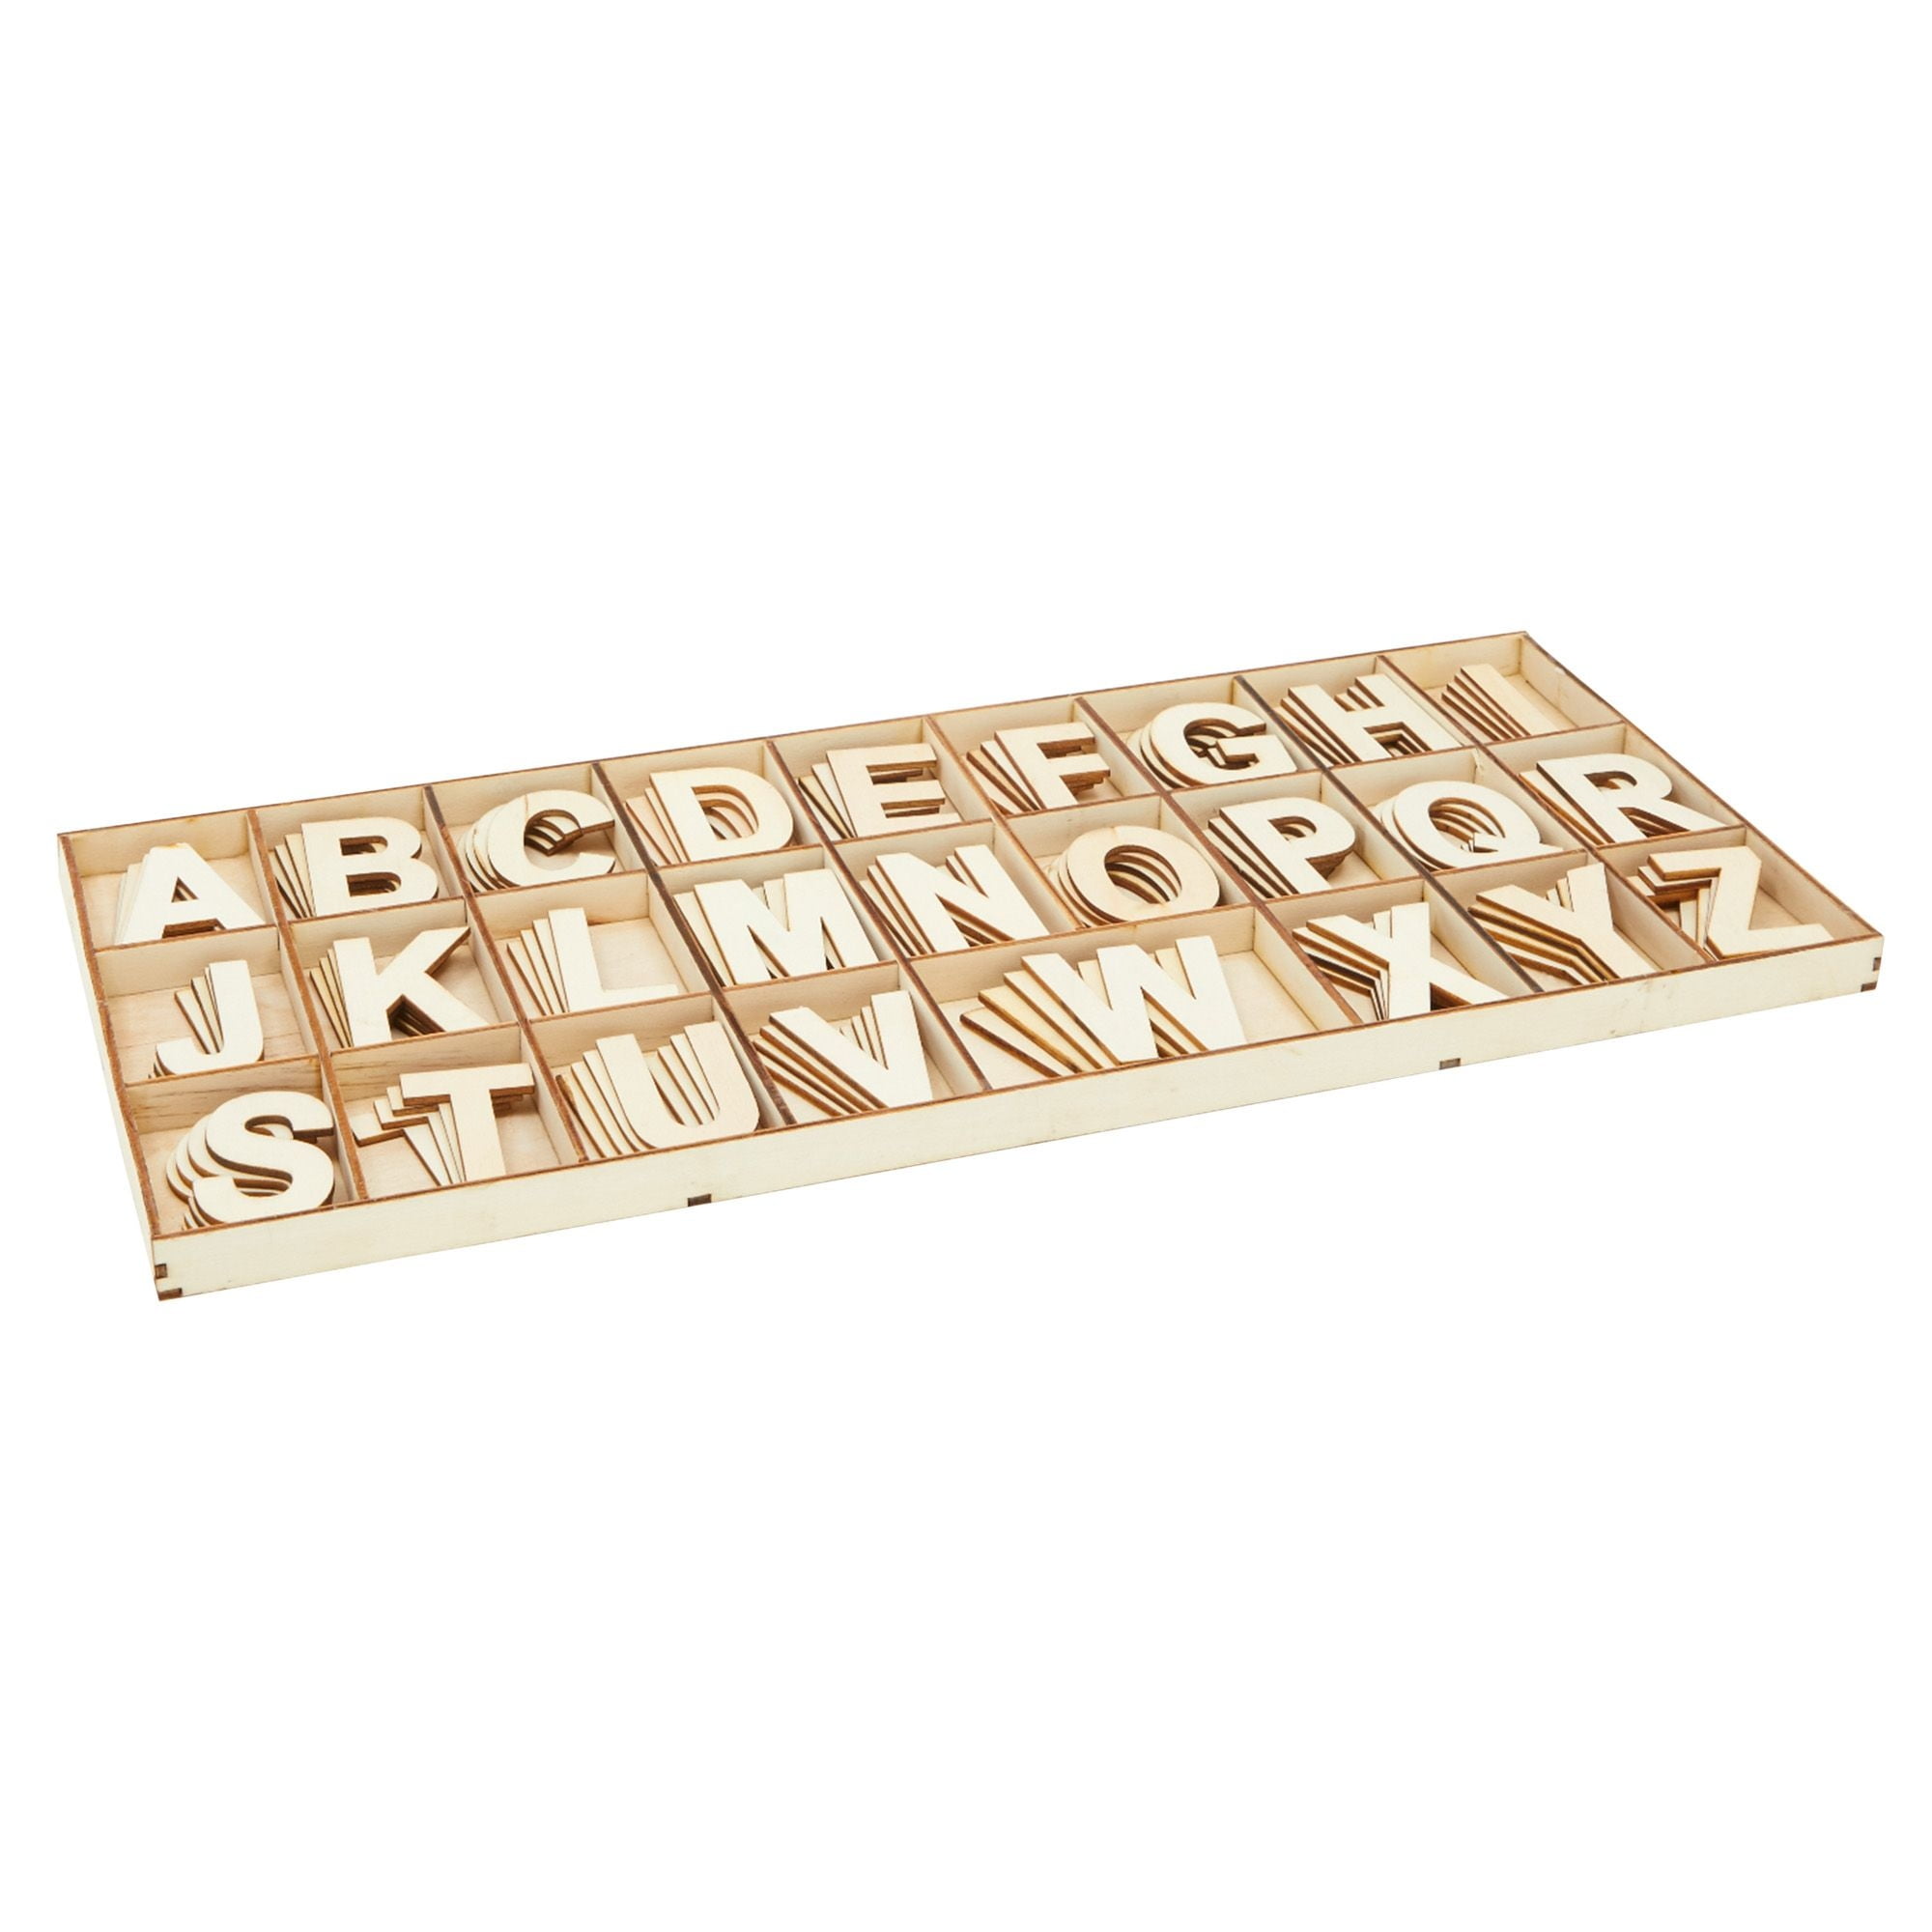 9 Sets 2 inch wooden letters wooden letters 2 inch wooden craft